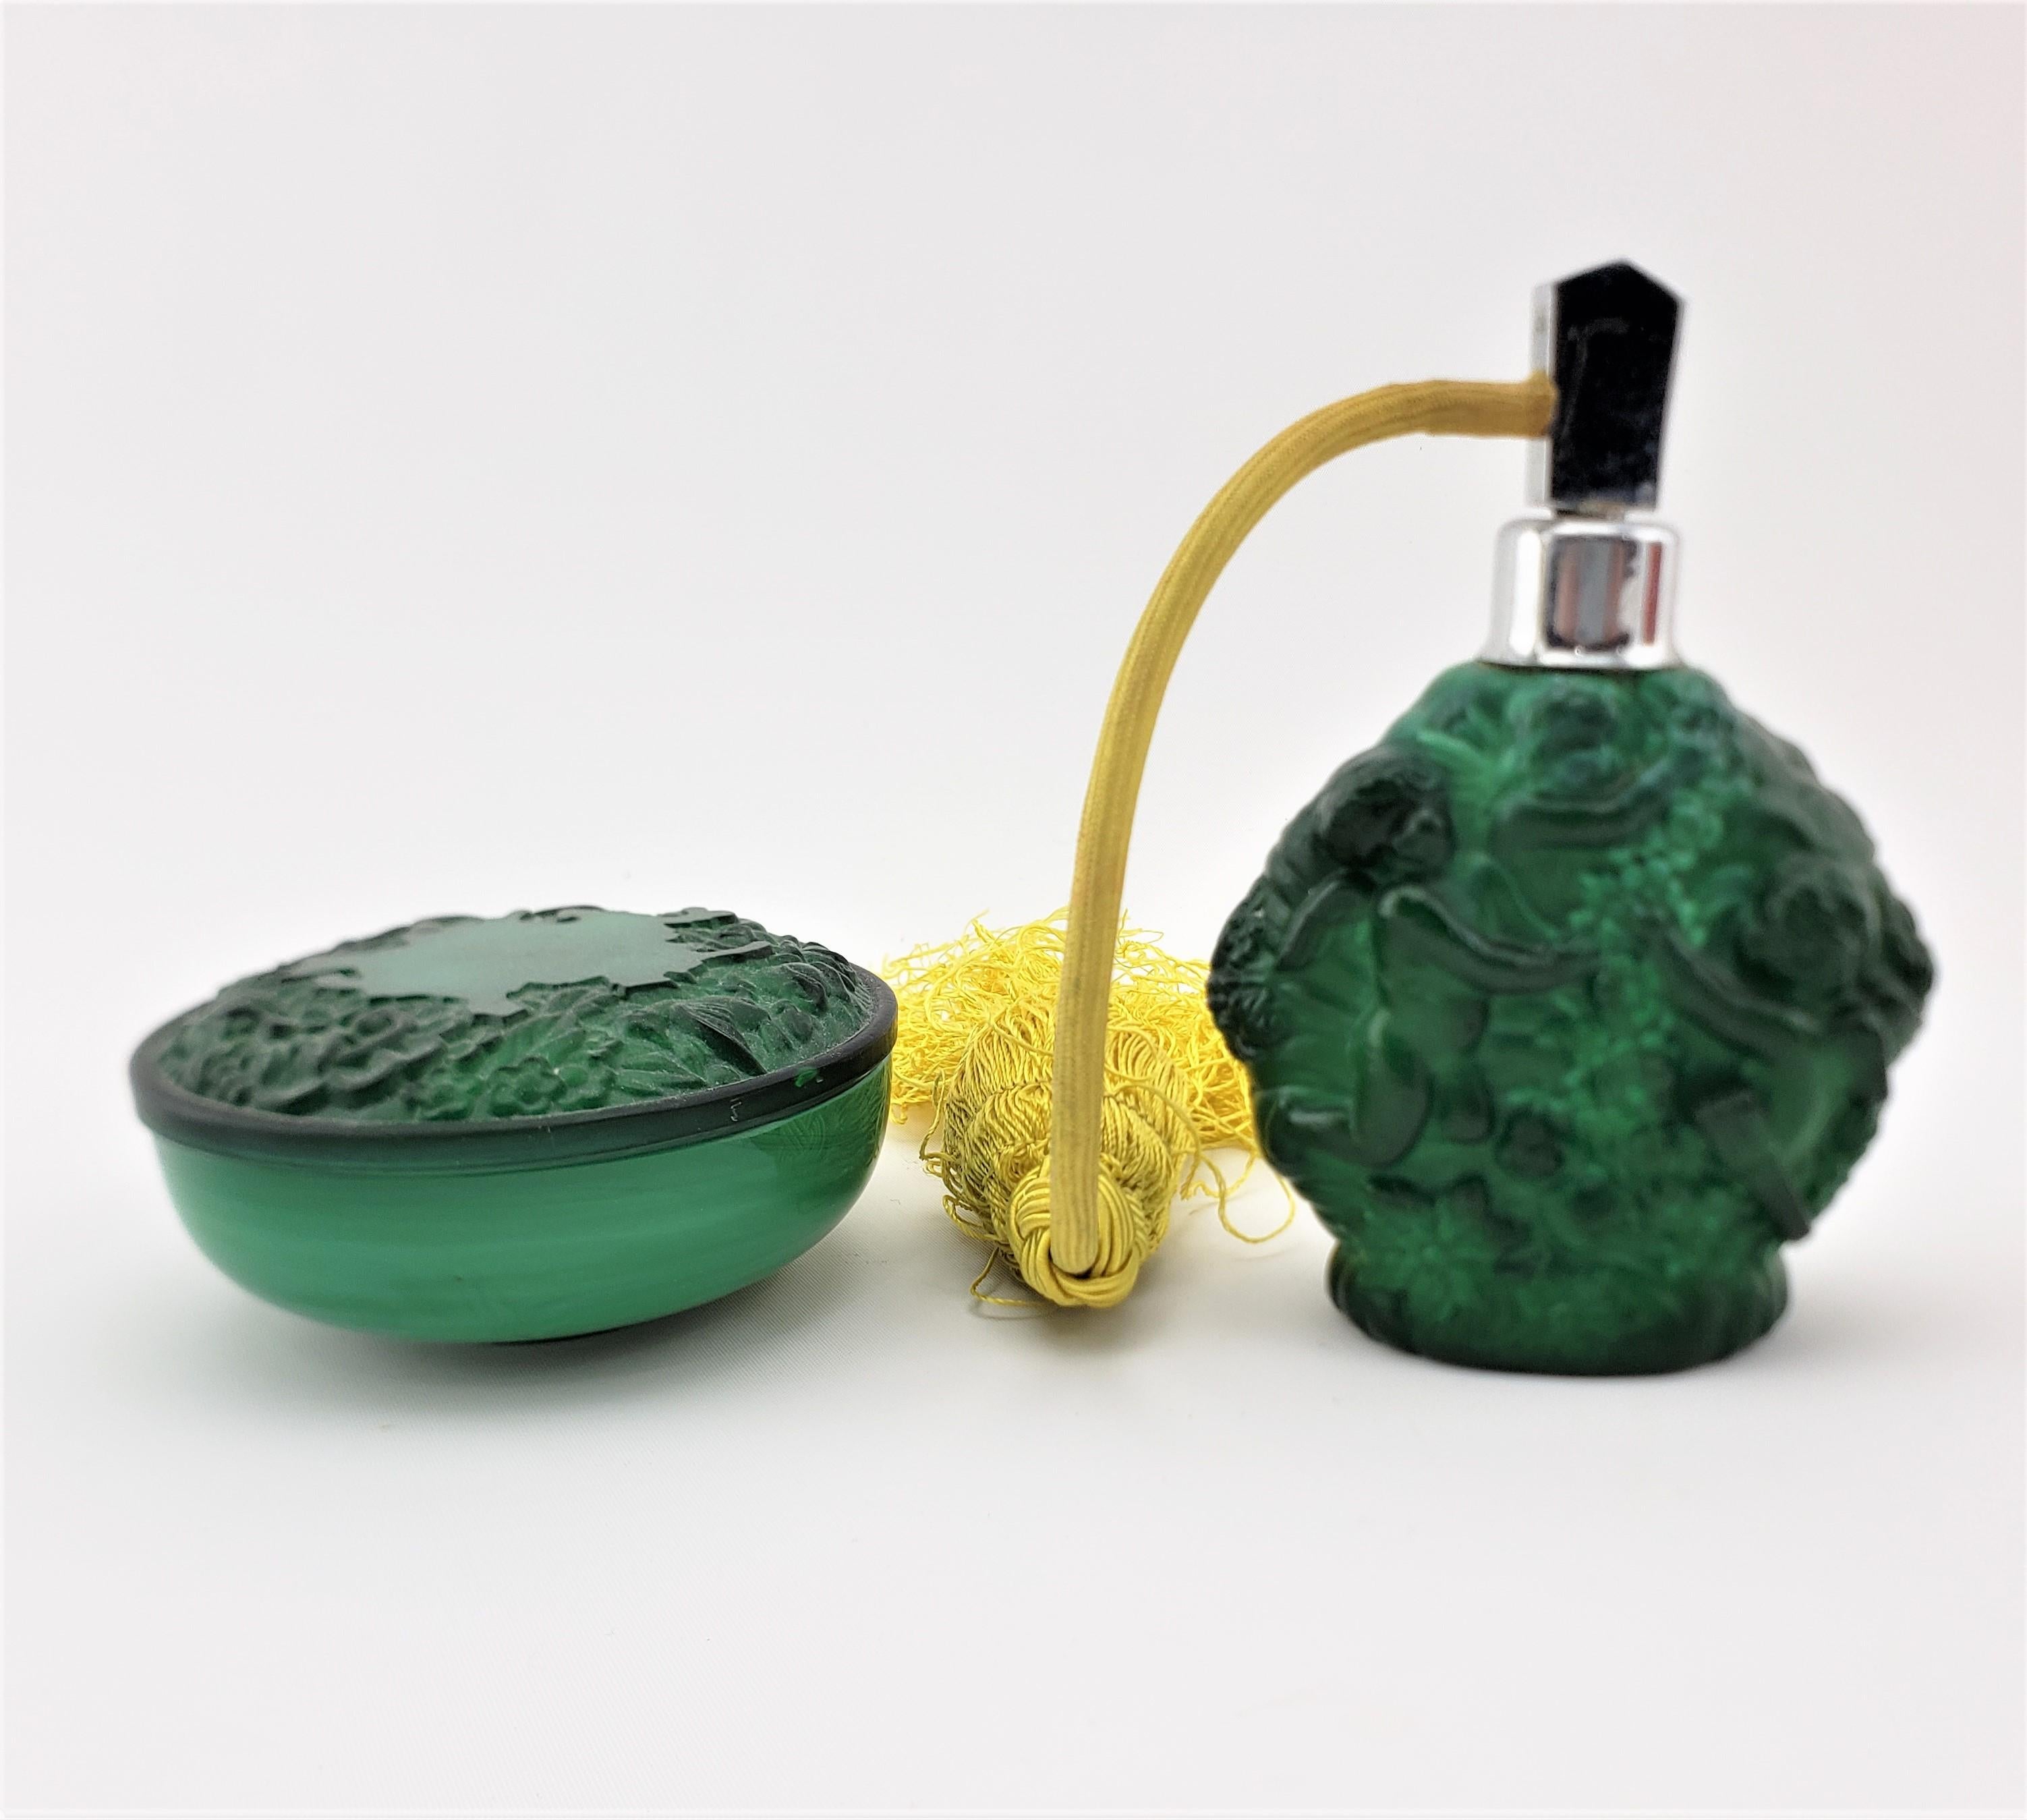 Diese antike Kommode und das Parfümfläschchen sind unsigniert, wurden aber vermutlich um 1920 in Österreich im Art-déco-Stil hergestellt. Das Set besteht aus tiefgrünem, malachitfarbenem Glas und ist mit neoklassischen Figuren auf der Vorderseite